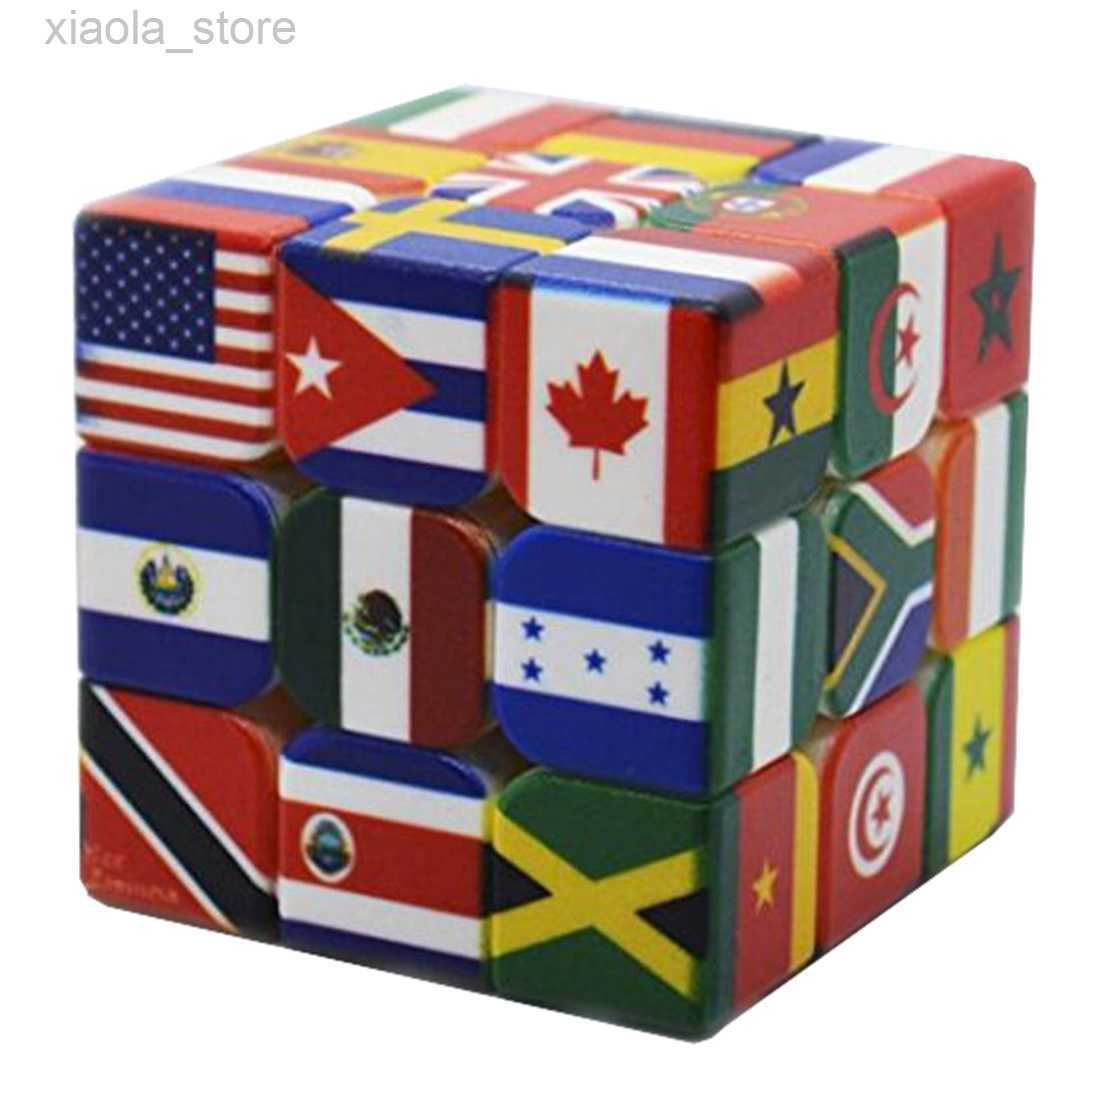 Inteligence Toys 3x3x3 Flagi narodowe Magic Cube UV Druk w świecie flagi puzzle globalne mapy ziemskie Magic Cube 3x3 dla dzieci